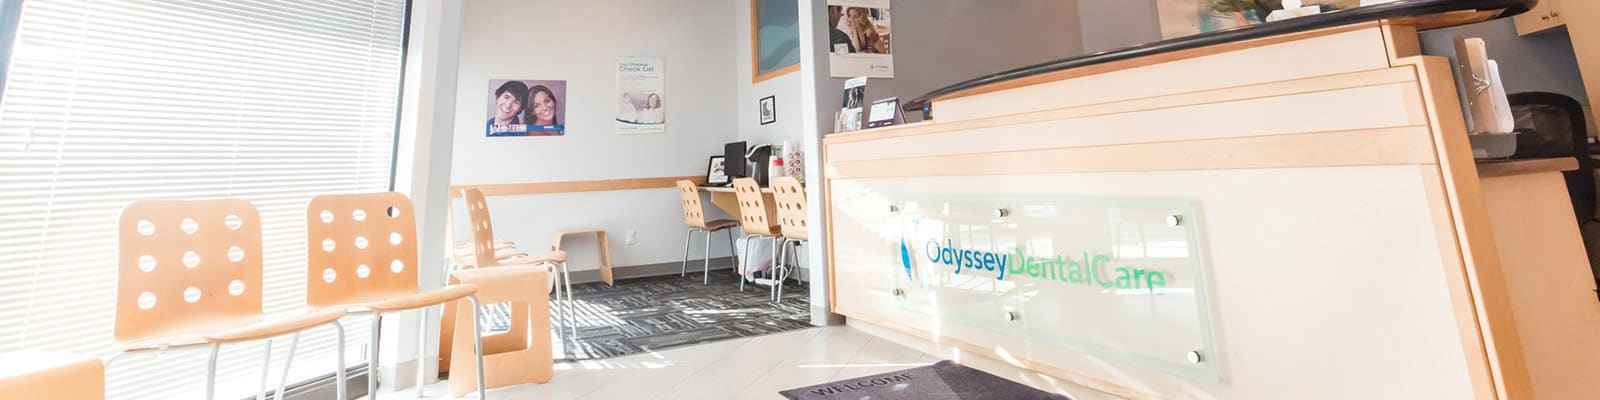 First Visit Information, Odyssey Dental Care